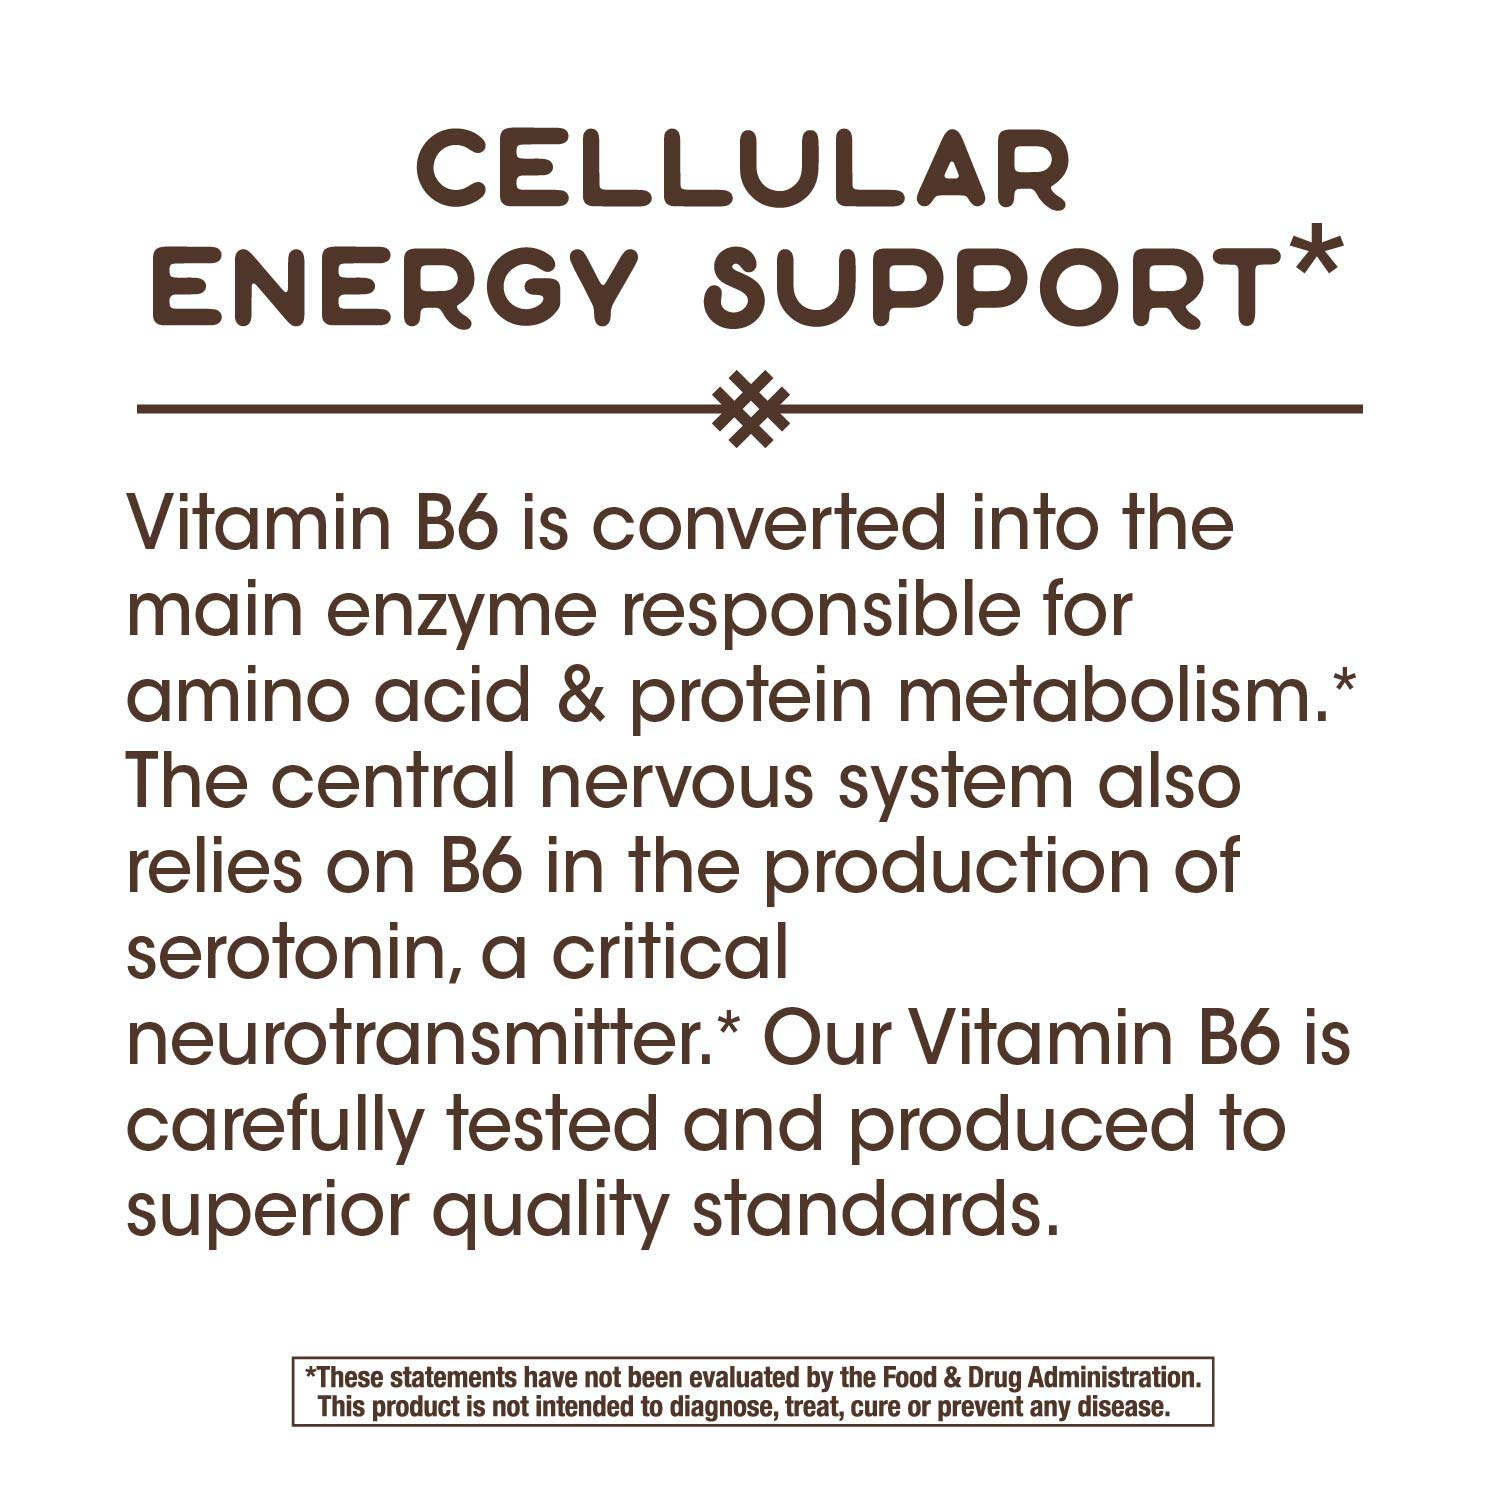 Nature's Way Vitamin B-6, 50 mg per serving